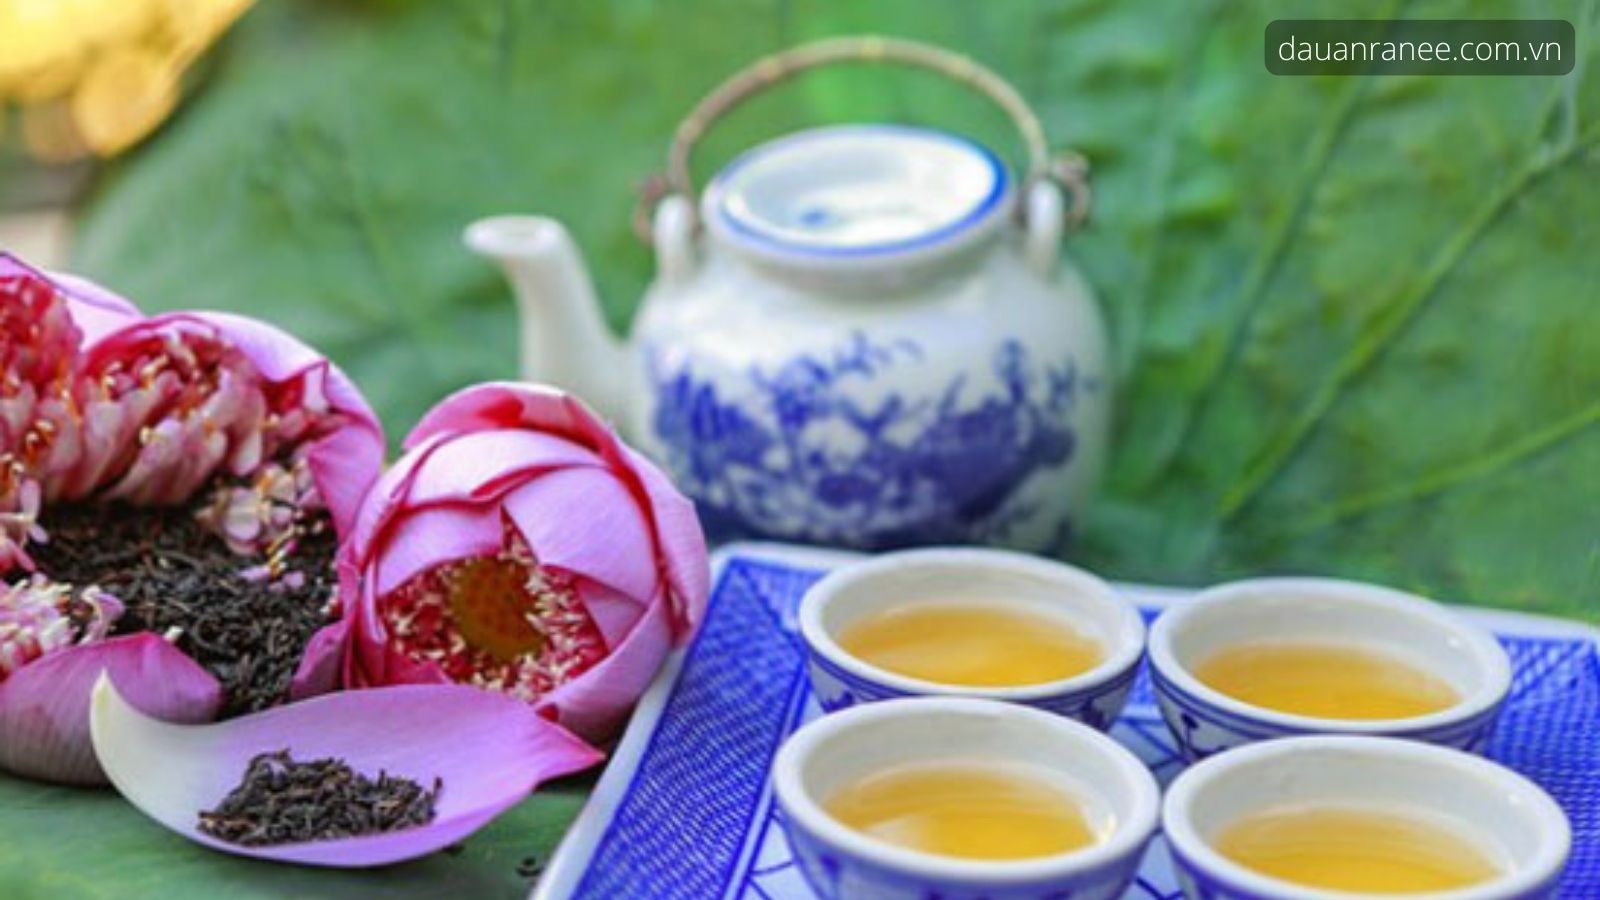 Trà sen Tây Hồ “Thiên cổ đệ nhất trà” - Đặc sản Hà Nội vào mùa thu